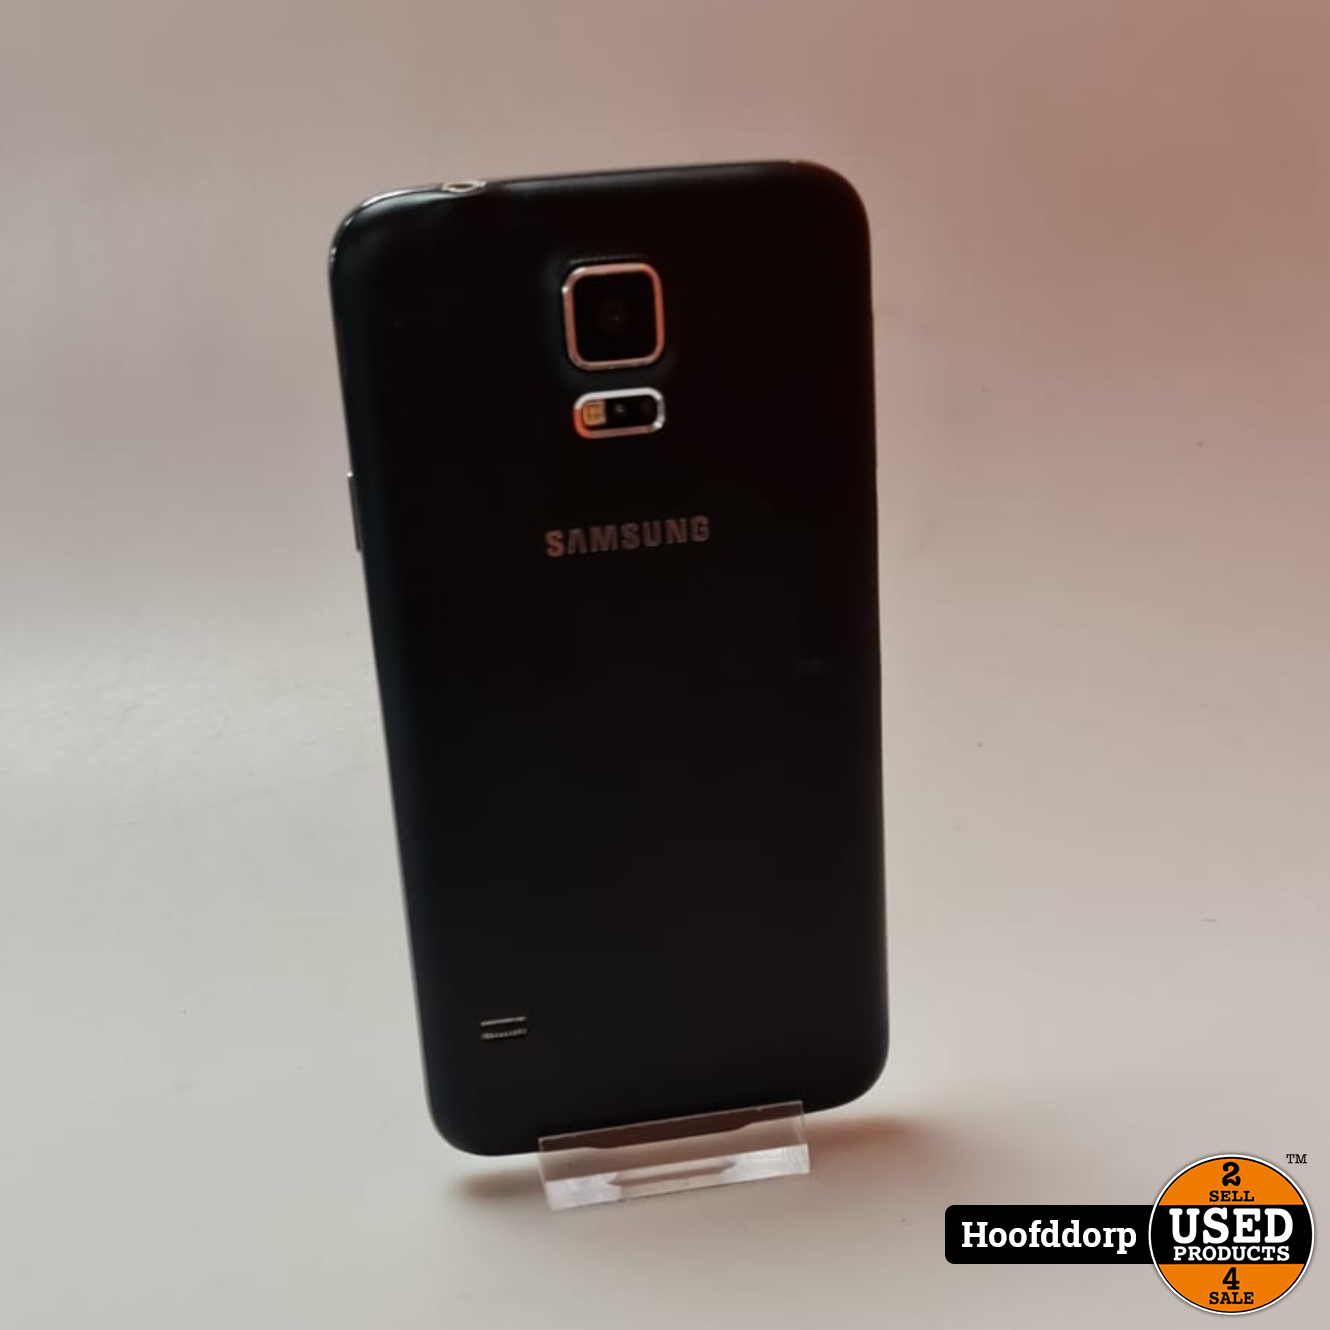 vonnis mannelijk Azië Samsung Galaxy S5 neo - Used Products Hoofddorp